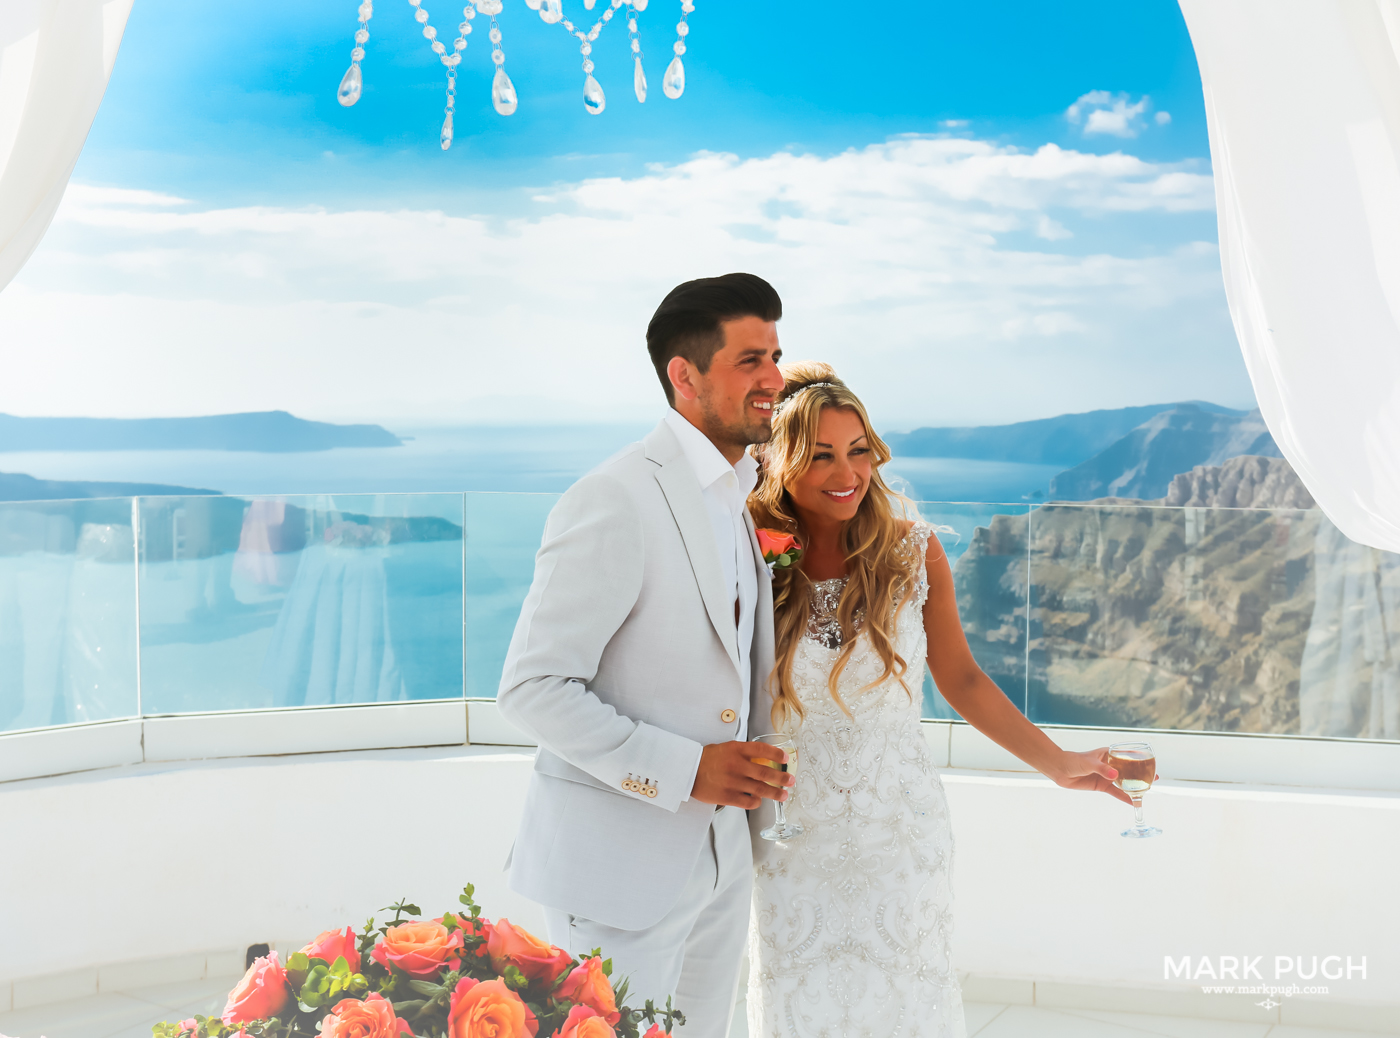 056 - Kerry and Lee - Destination Wedding in Santorini by www.markpugh.com -0611.JPG